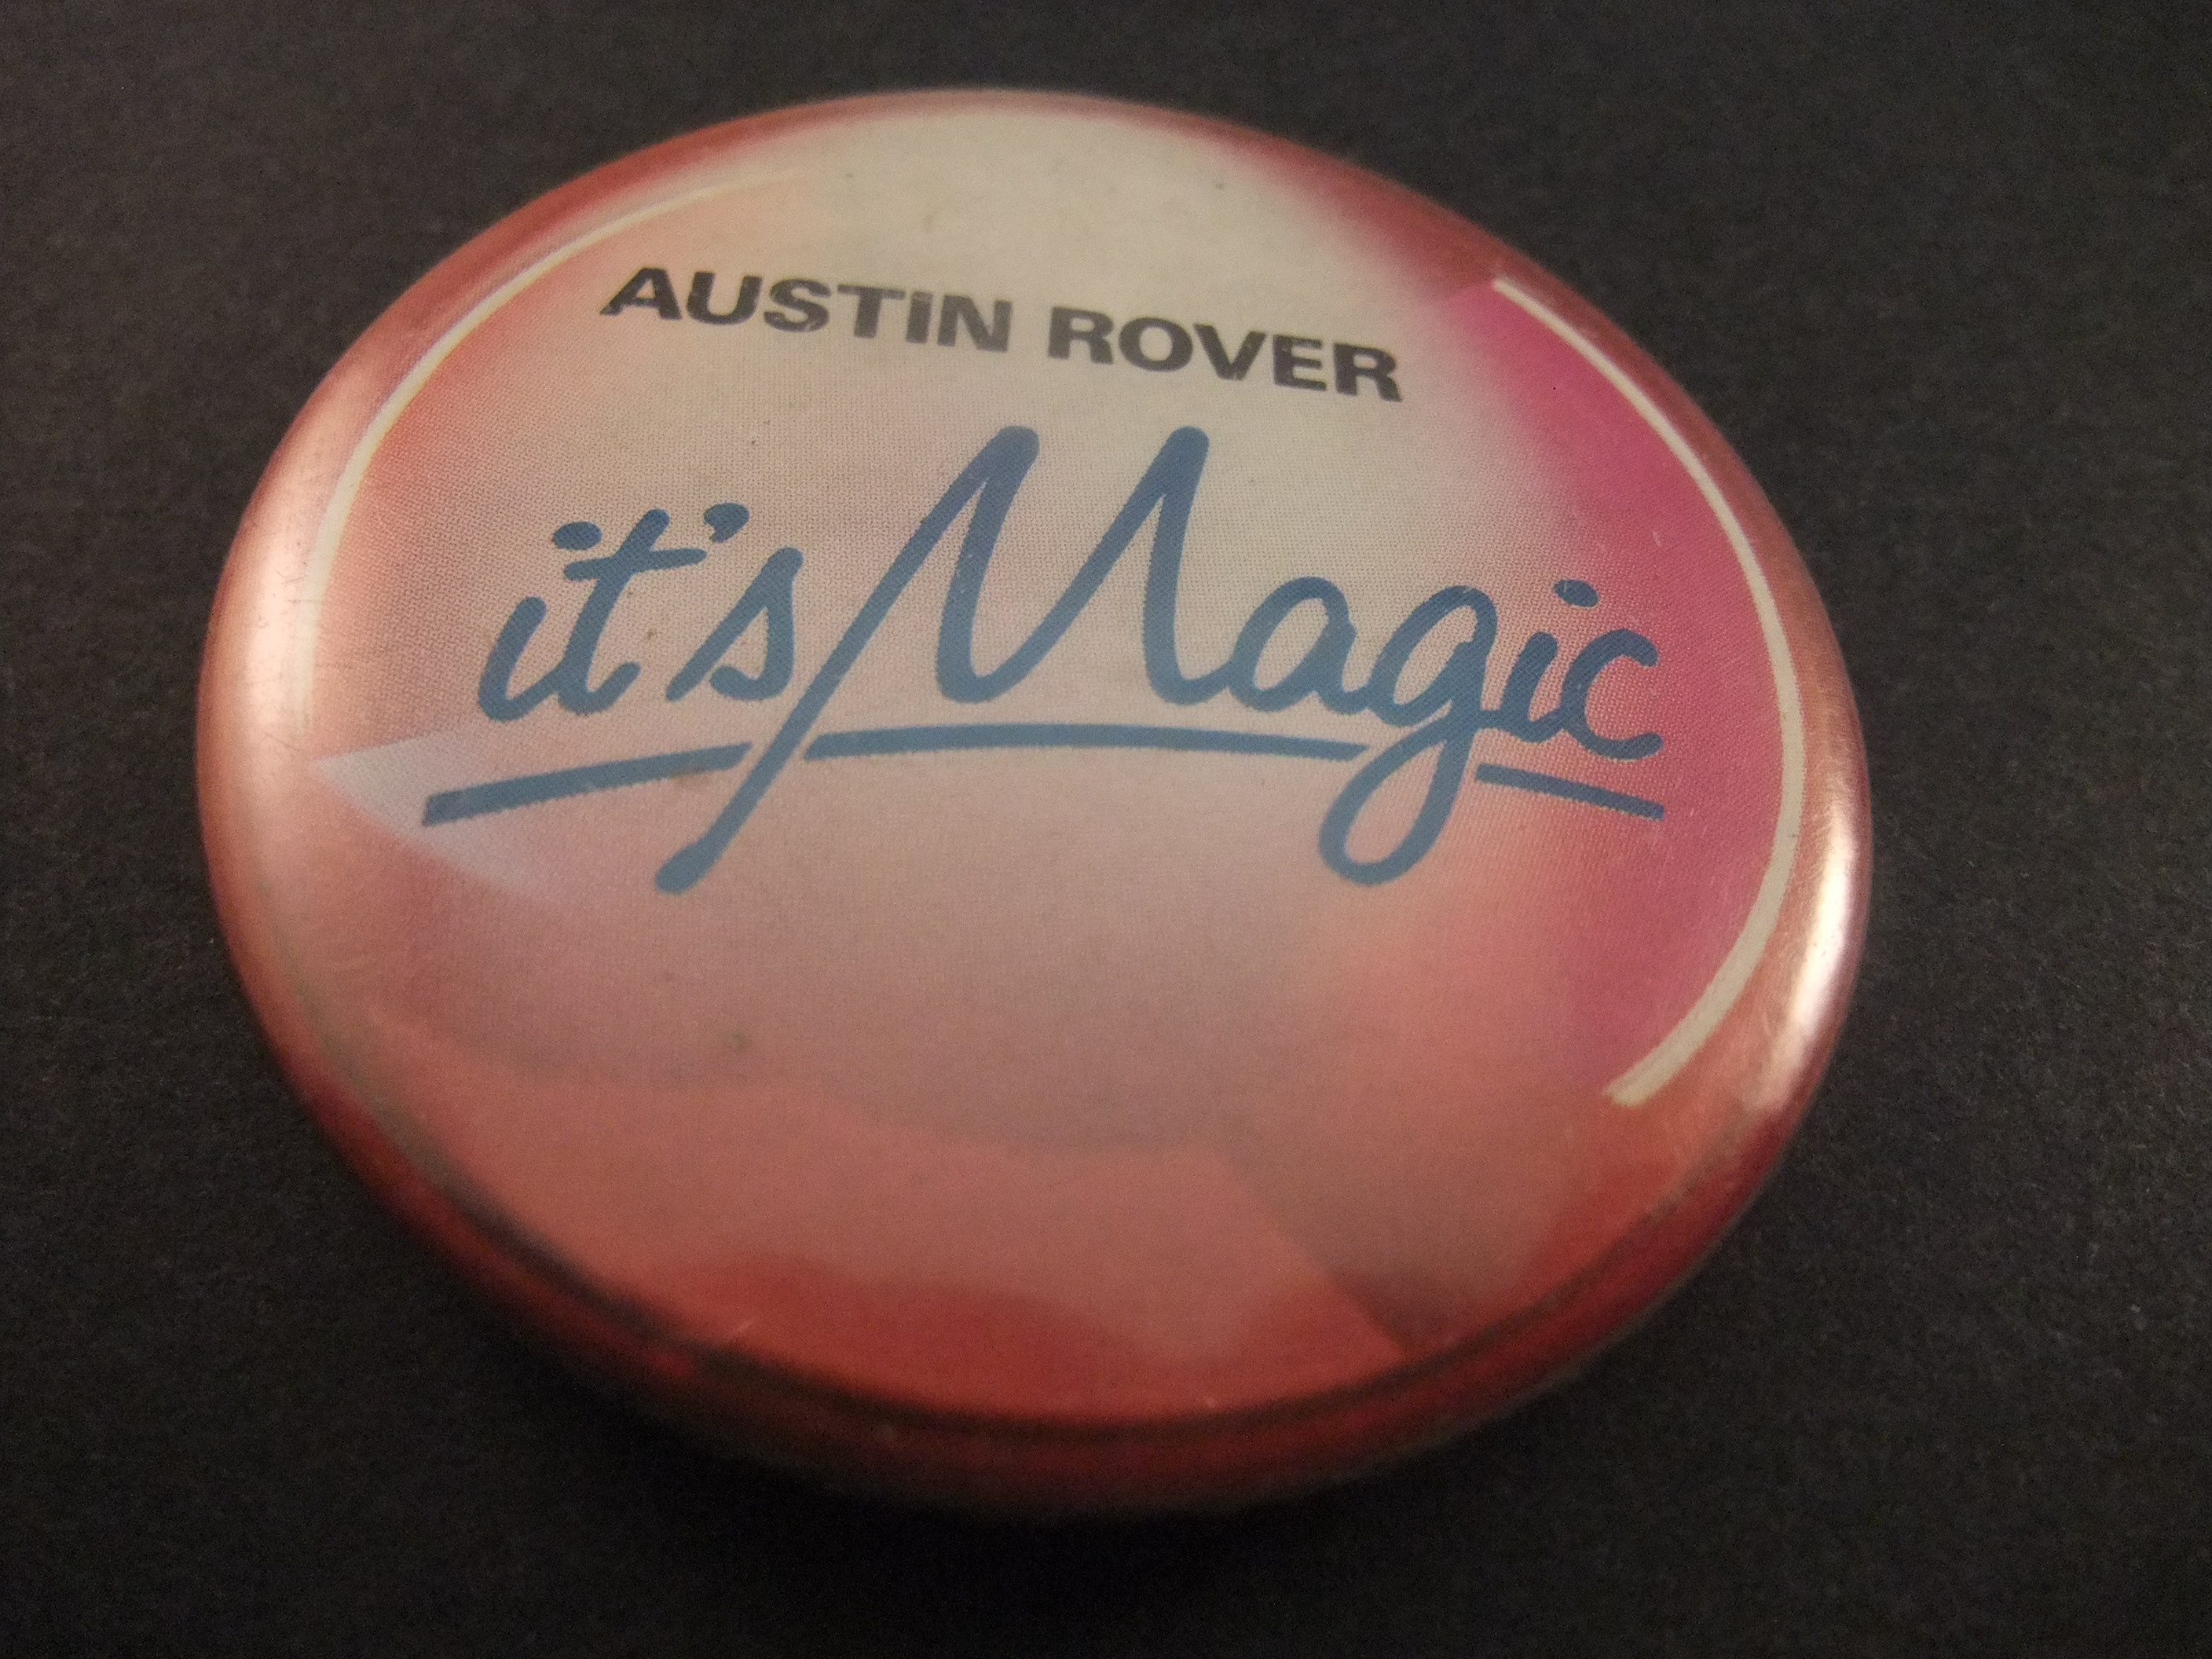 Austin Rover It's Magic